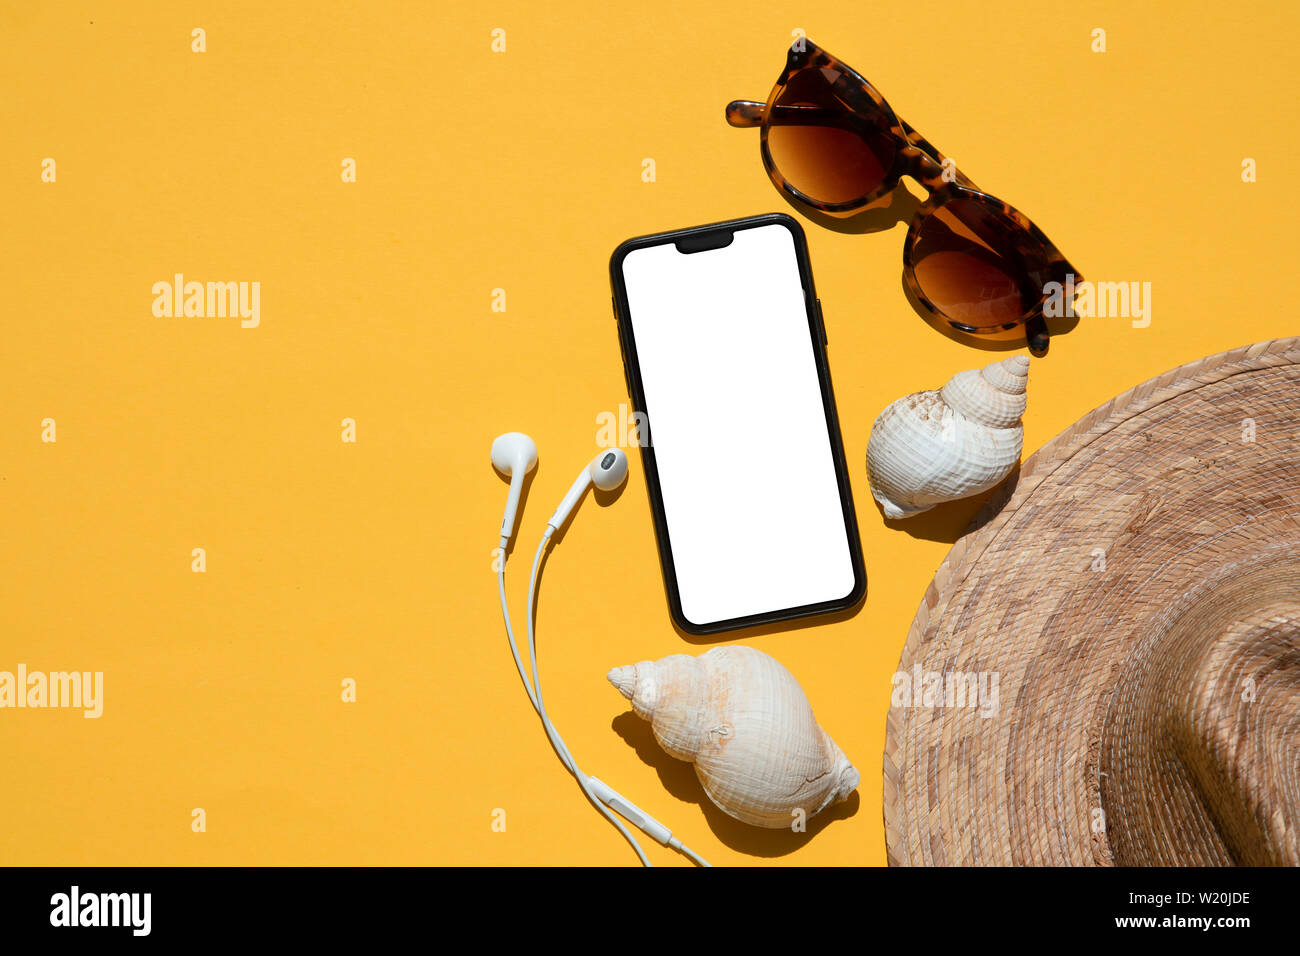 Estate composizione dello smartphone. Smartphone vuoto con accessori di estate Foto Stock